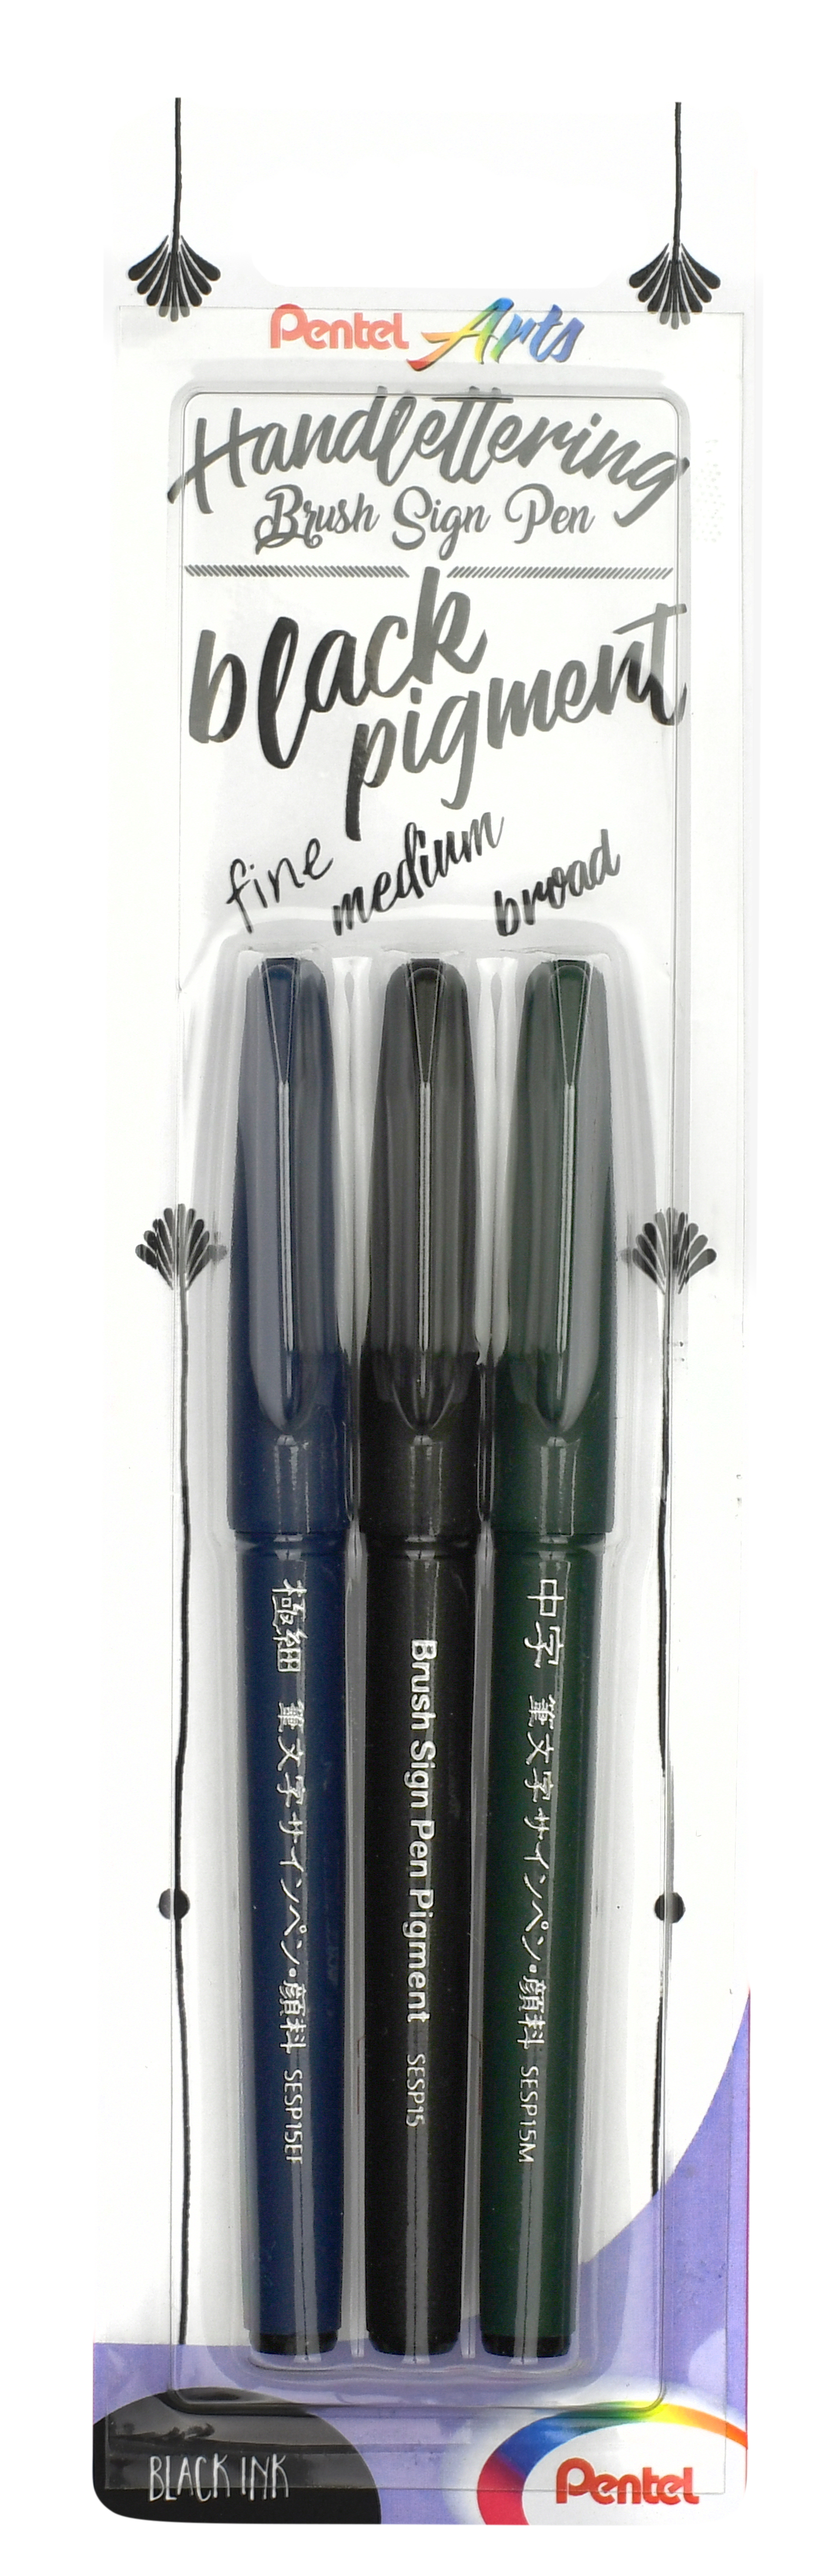 Brush Sign Pen Pigment - Black Pigment Edition